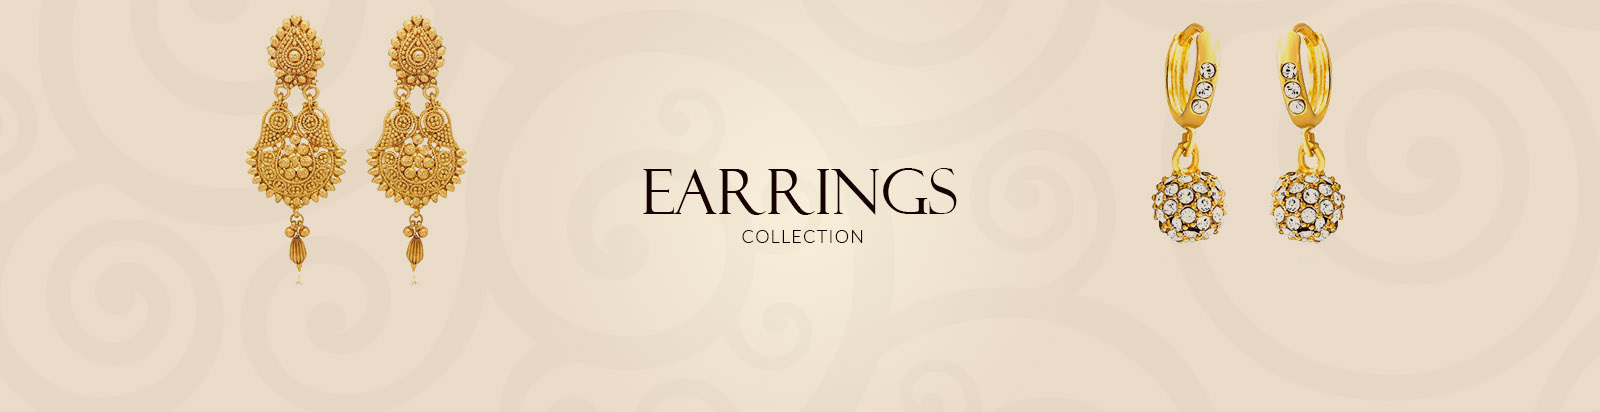 earrings-banner